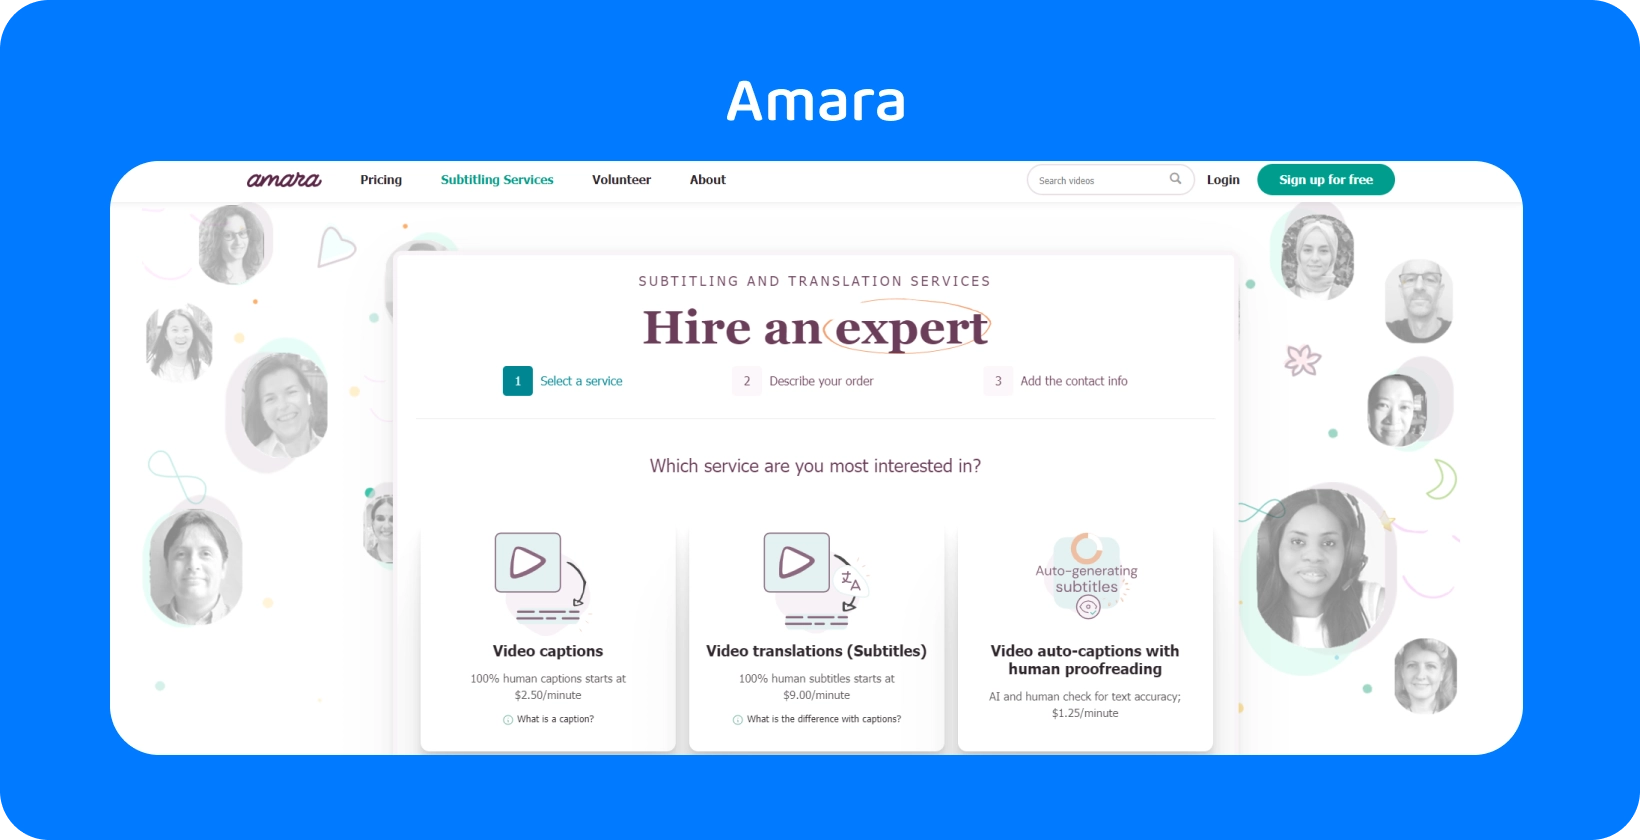 דף האינטרנט של Amara מראה כיצד להוסיף בקלות כתוביות לסרטונים מקוונים, ובכך לשפר את נגישות הצופים.